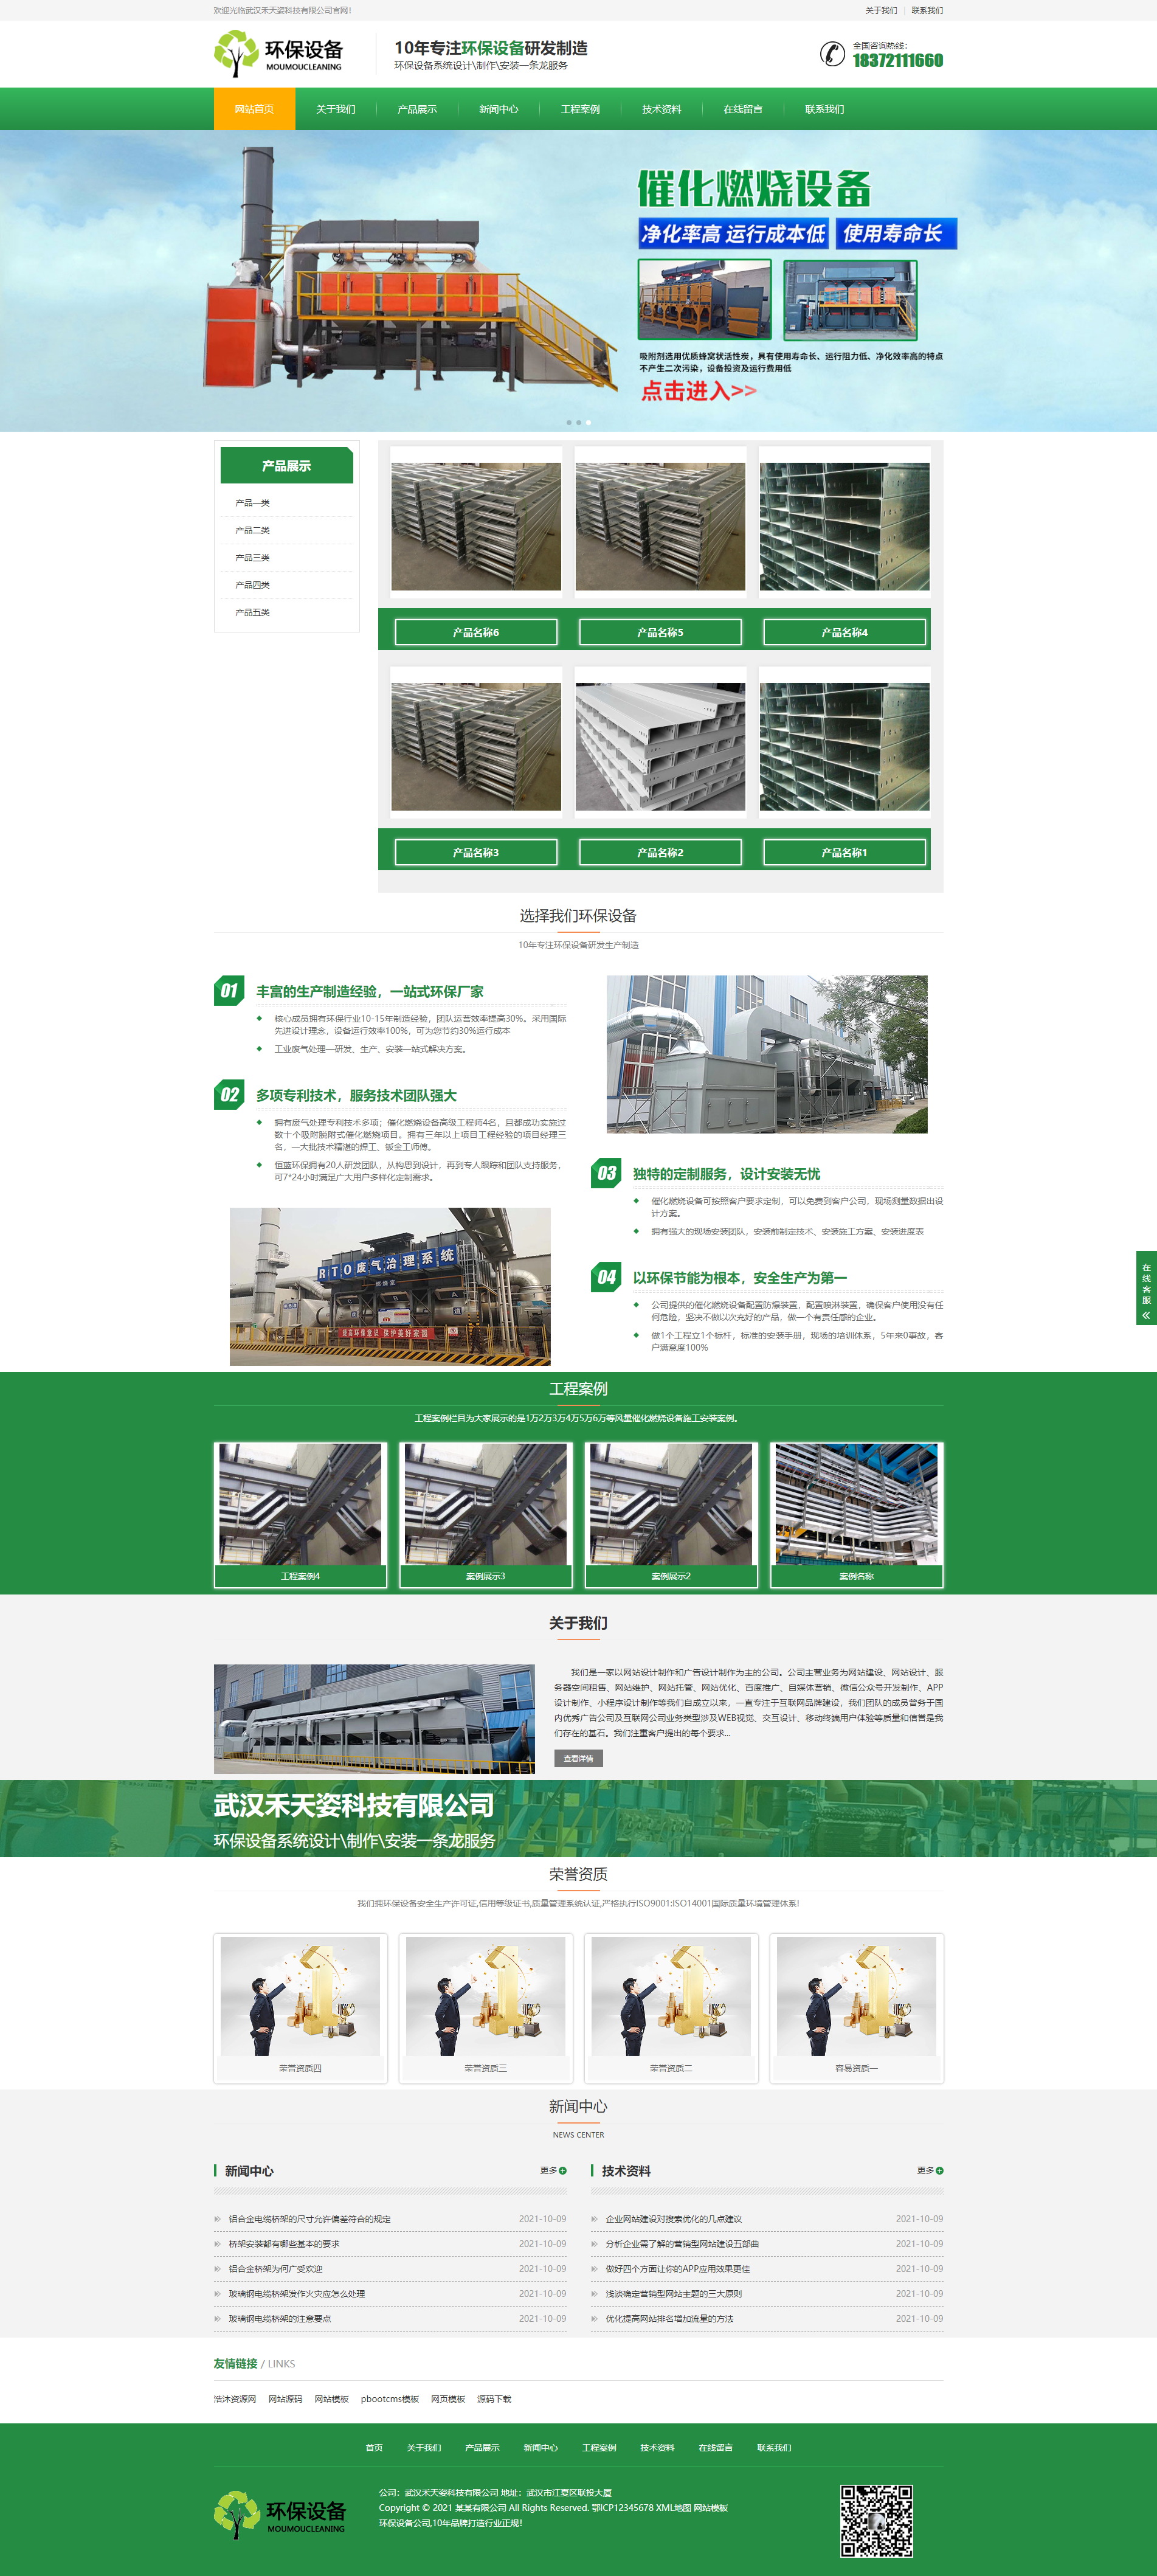 响应式营销型环保设备科技类网站pbootcms模板,绿色环保材料网站源码下载